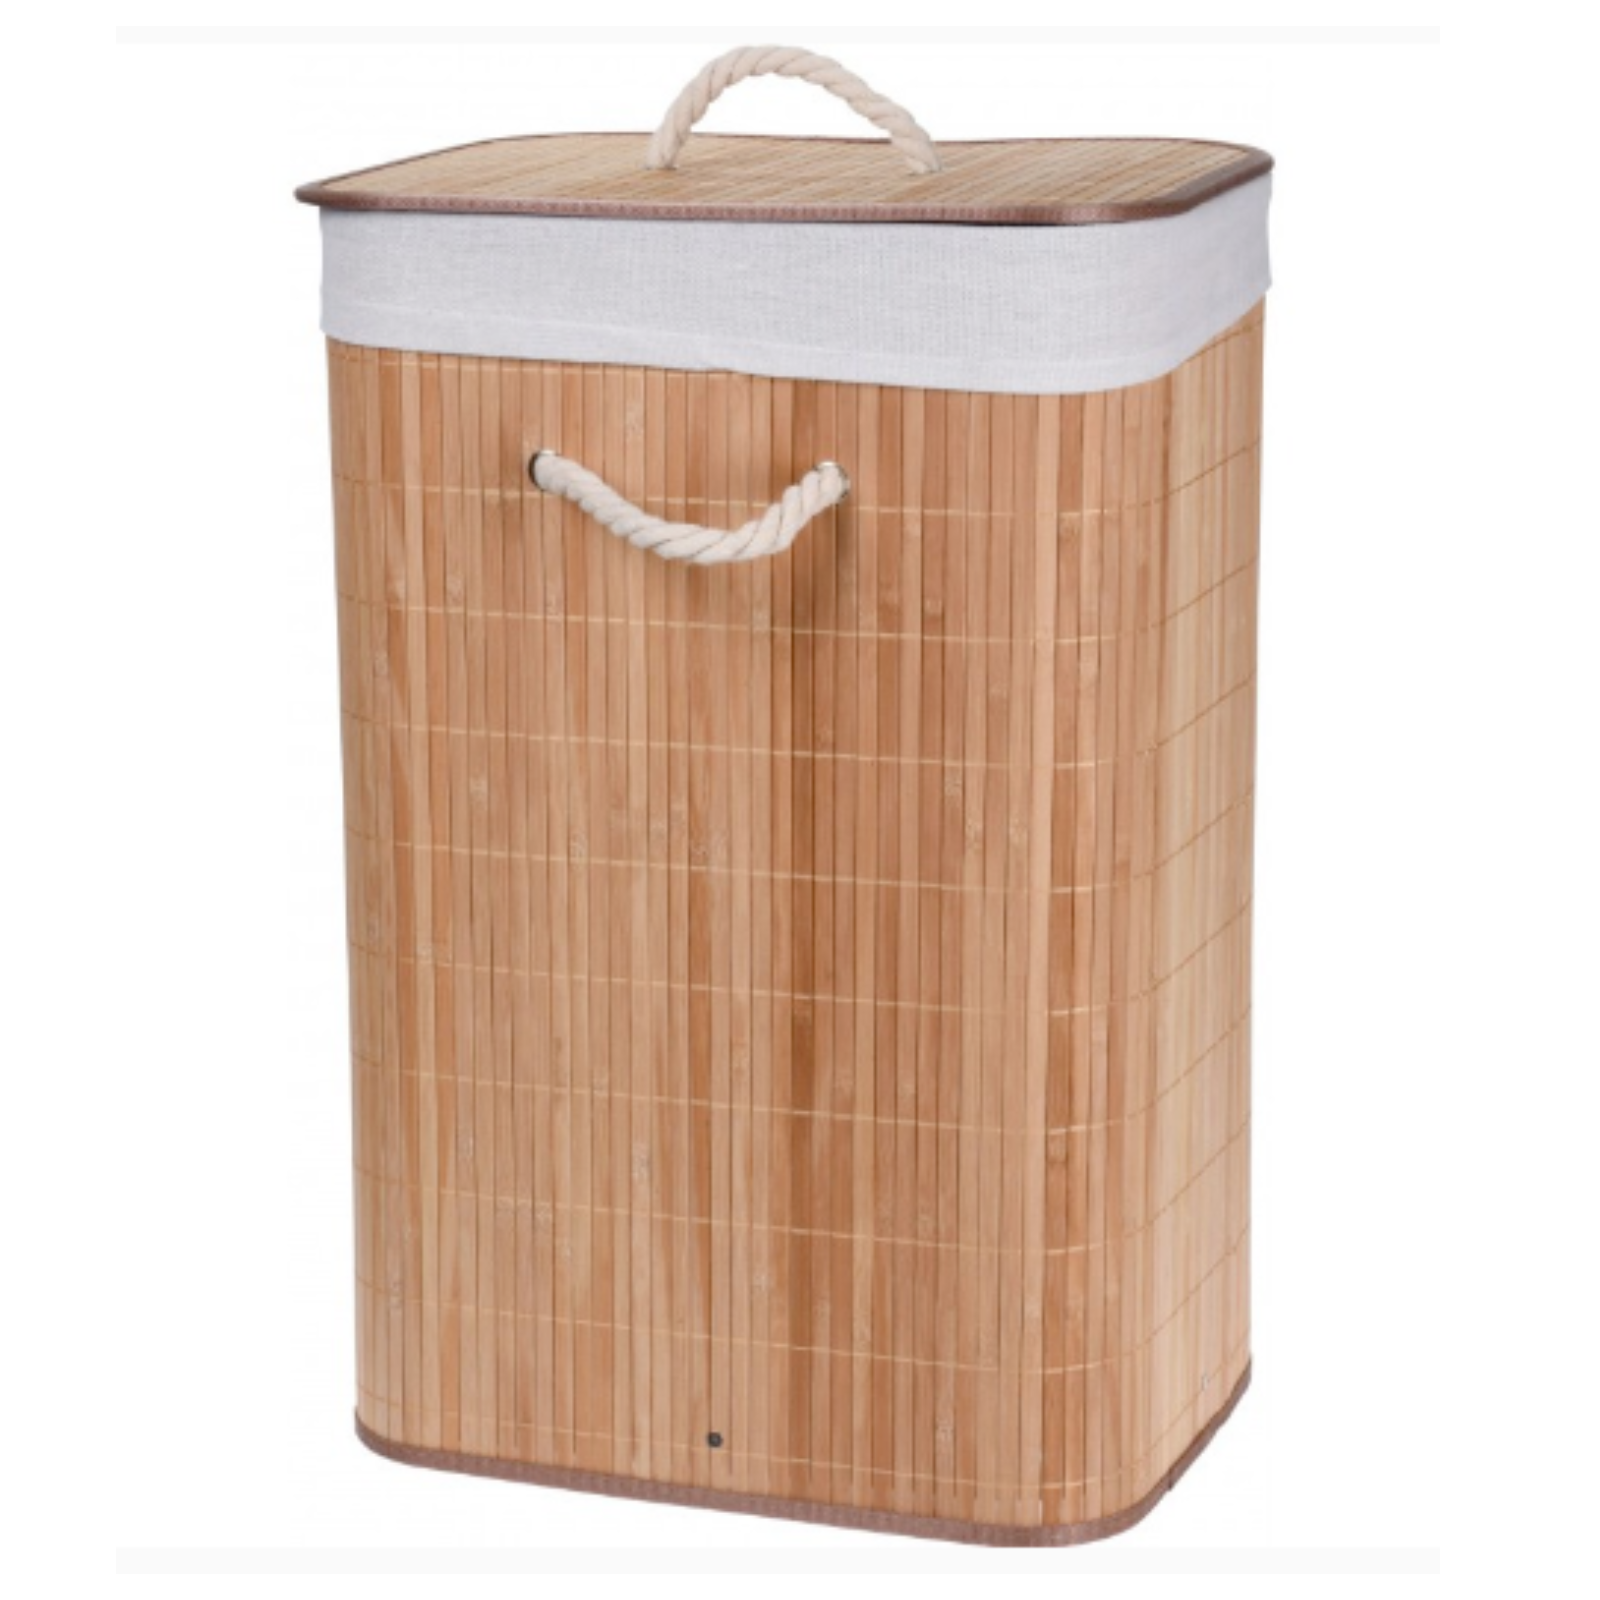 Portabiancheria salvaspazio pieghevole "Laundry" design moderno in bambù con coperchio